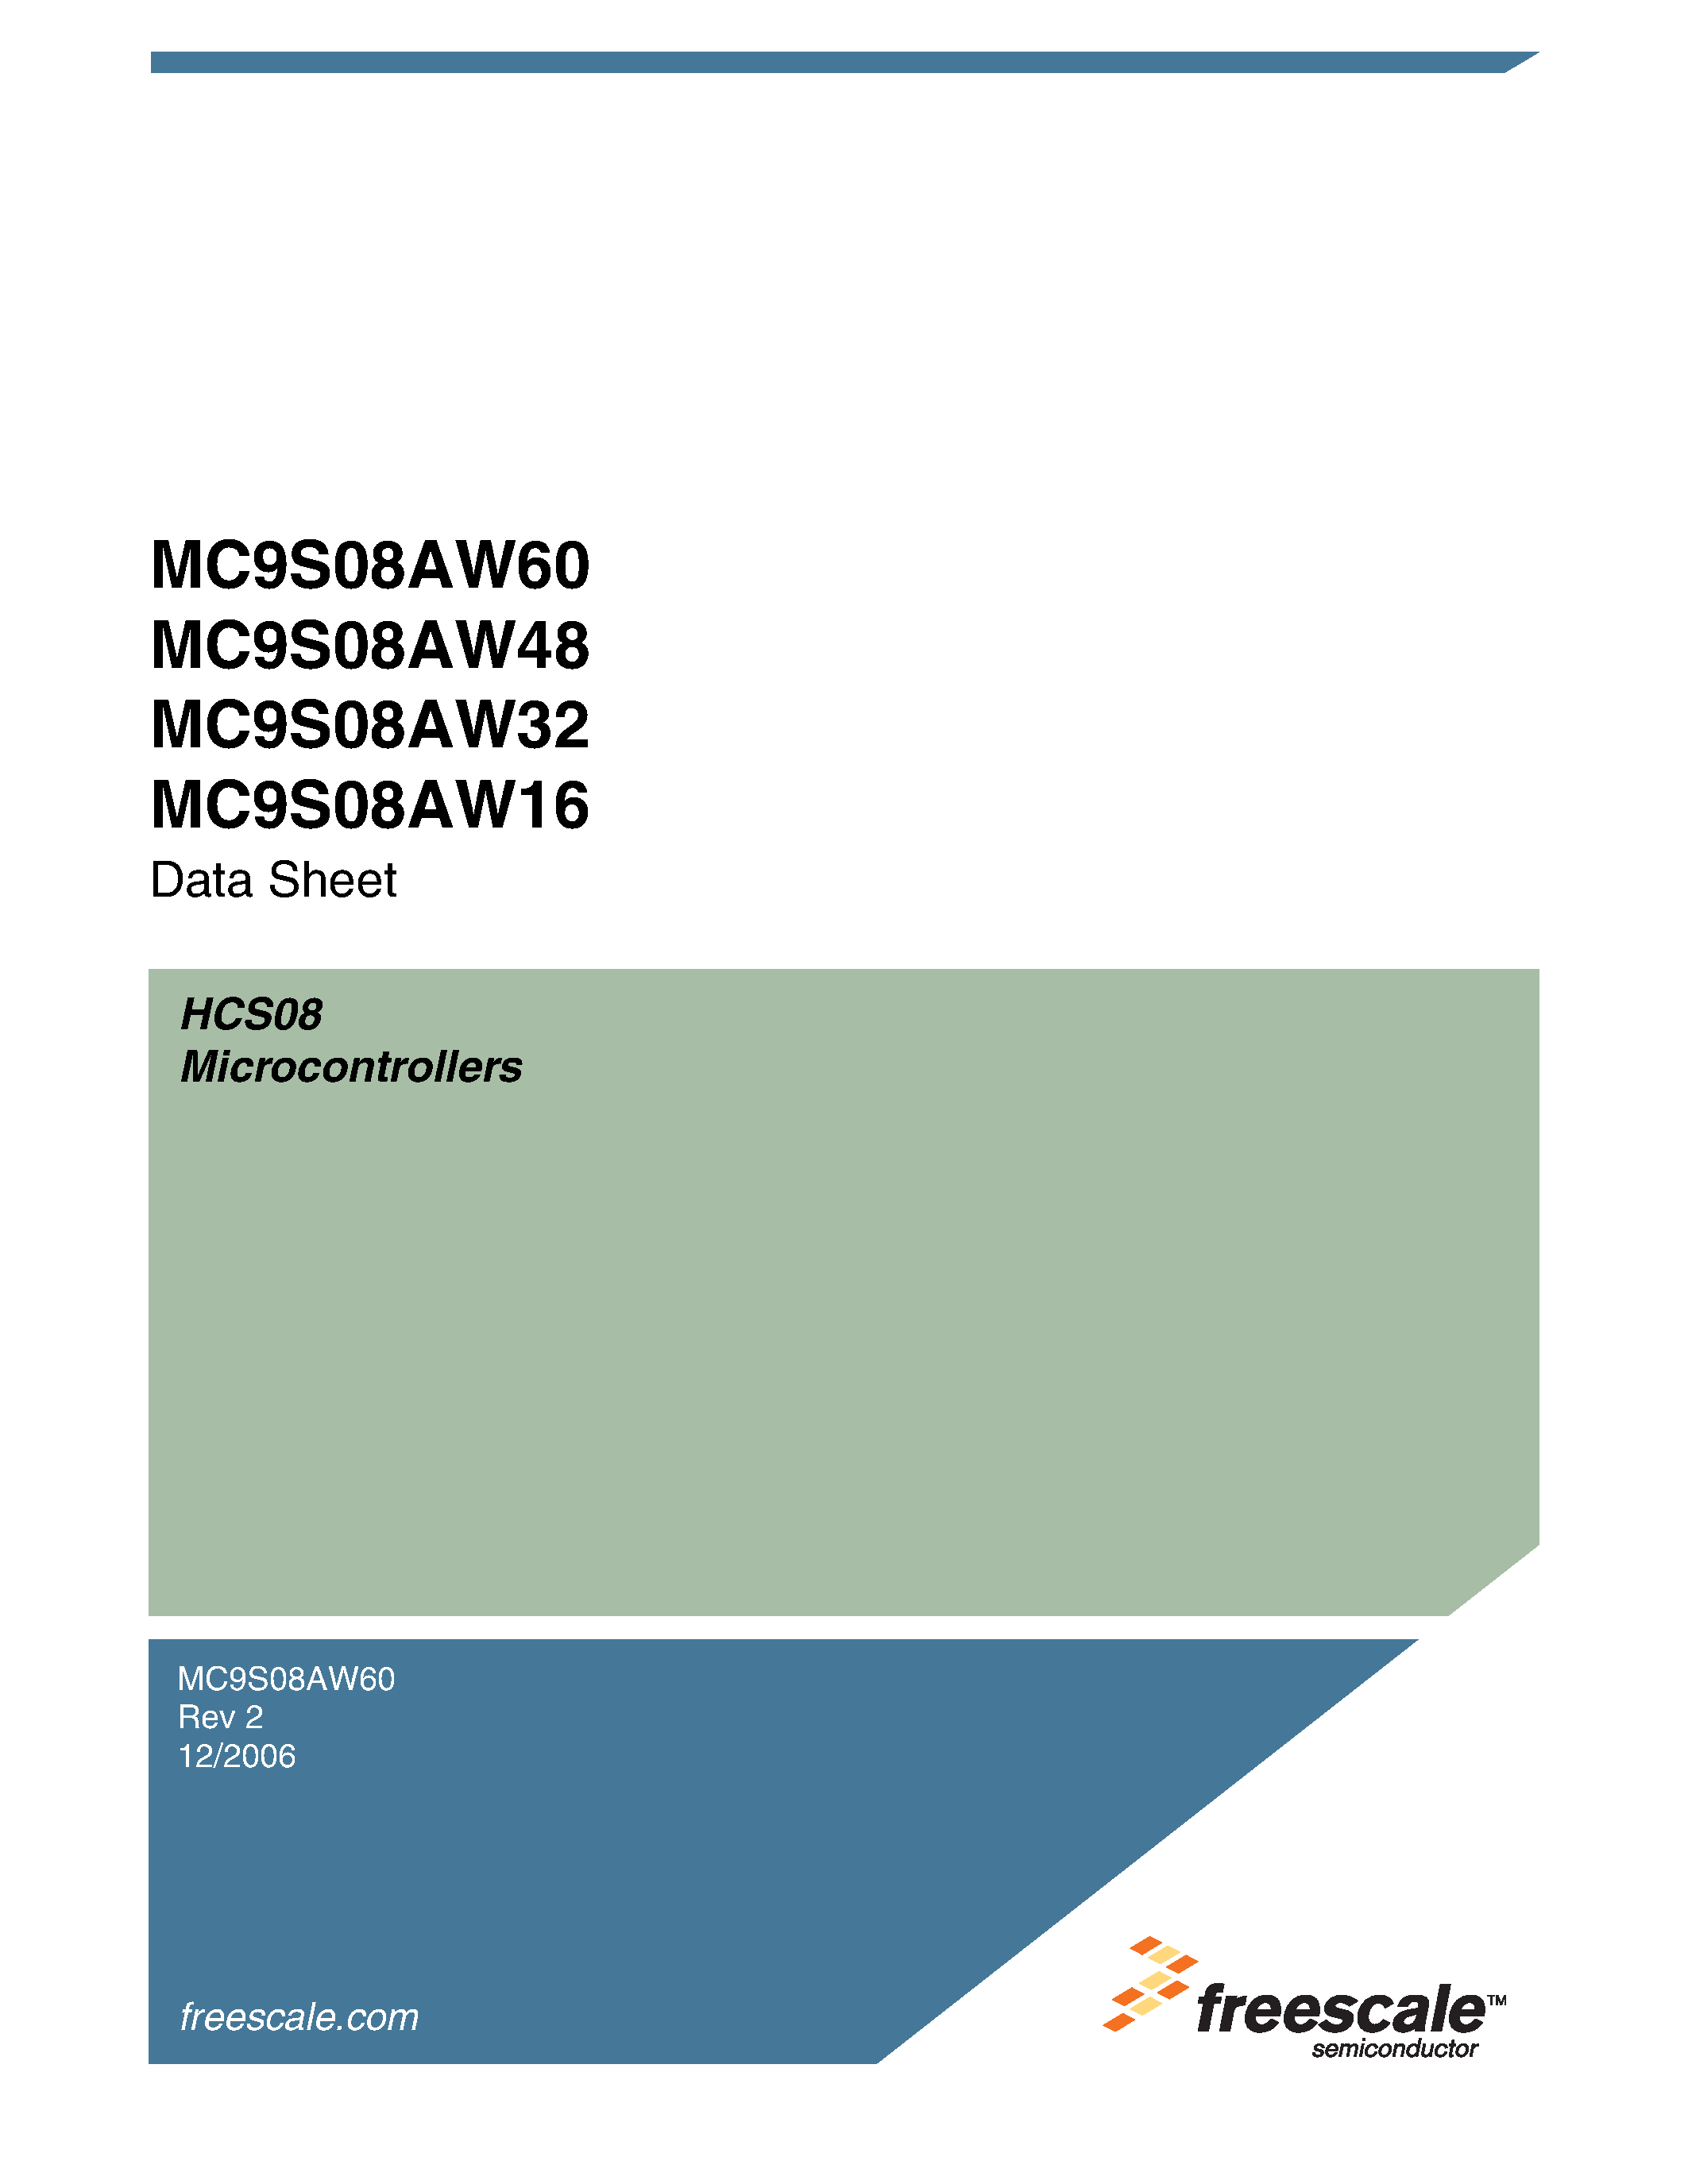 Даташит MC9S08AW16 - (MC9S08AW16 - MC9S08AW60) Microcontrollers страница 1